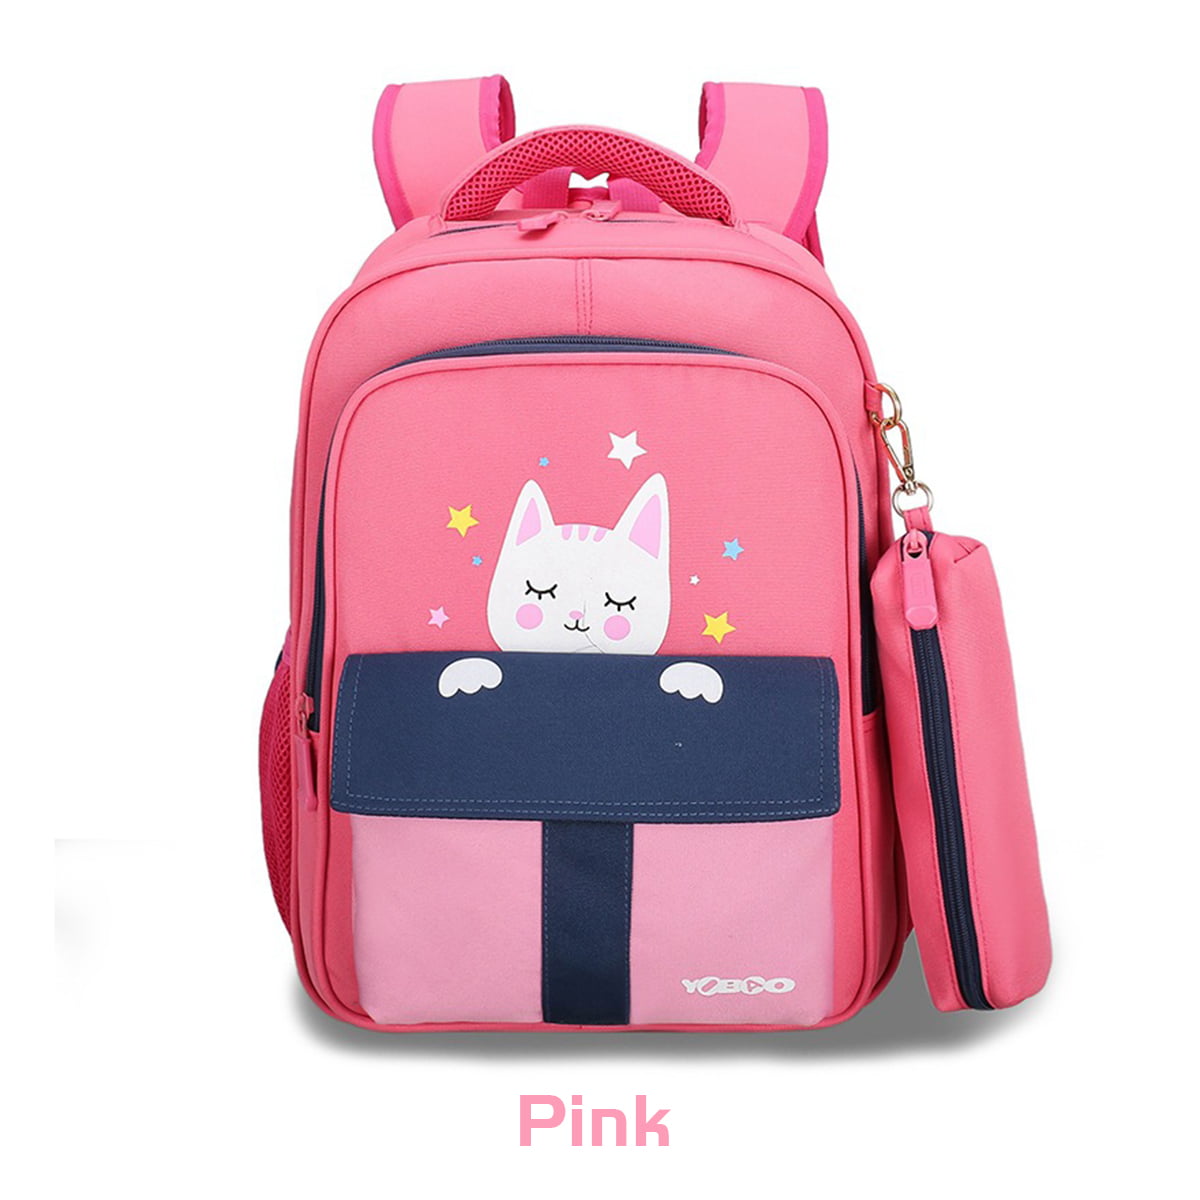 Junior Middle School Backpack Girls Boys Kids Cool Cat Dog Bag Bookbag Satchel